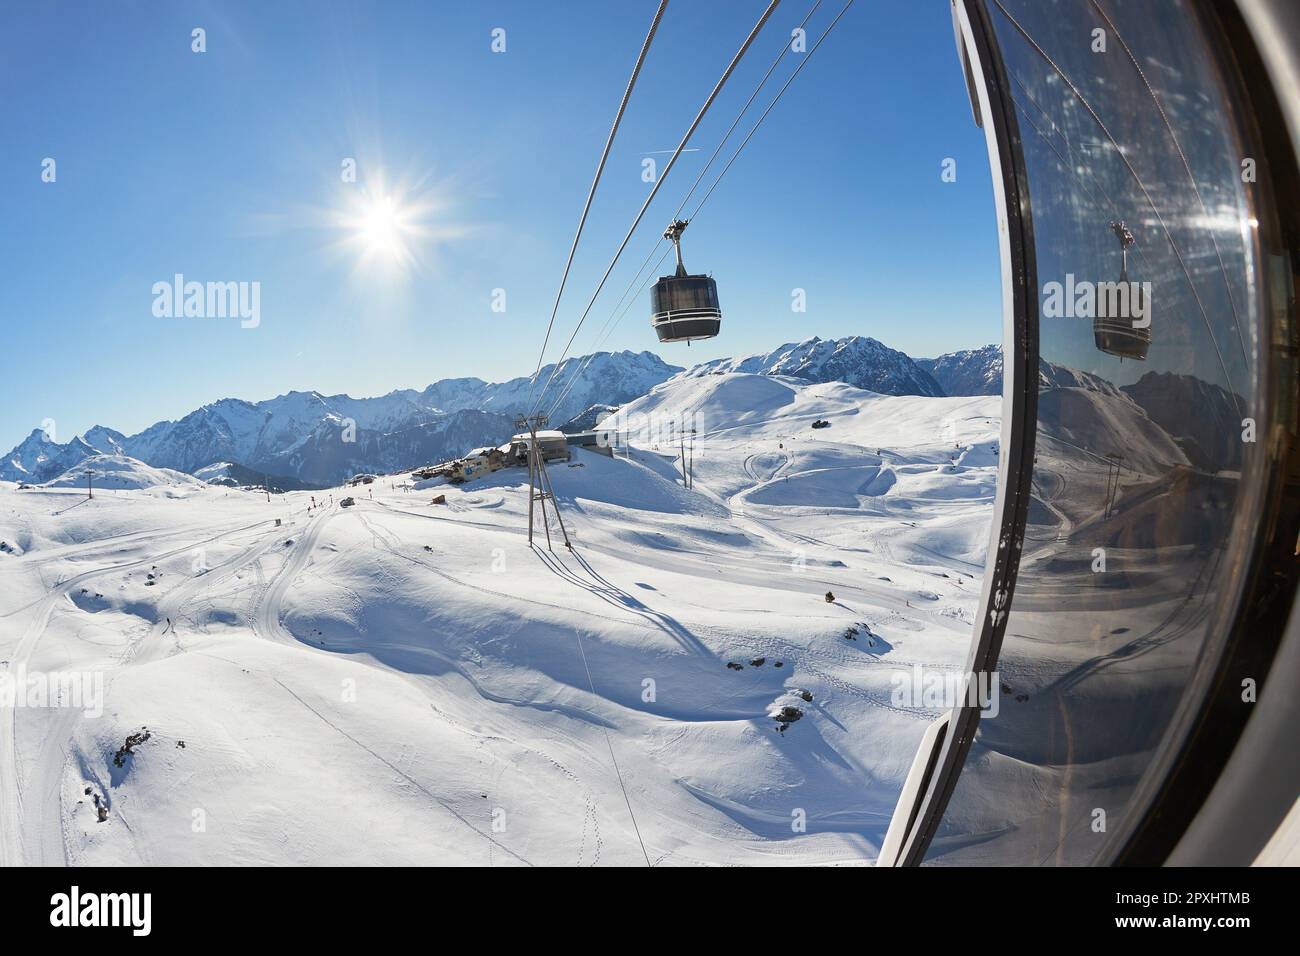 Remontée mécanique dans les Alpes avec ciel bleu clair au-dessus des nuages, en s'inclinant vers la fenêtre Banque D'Images